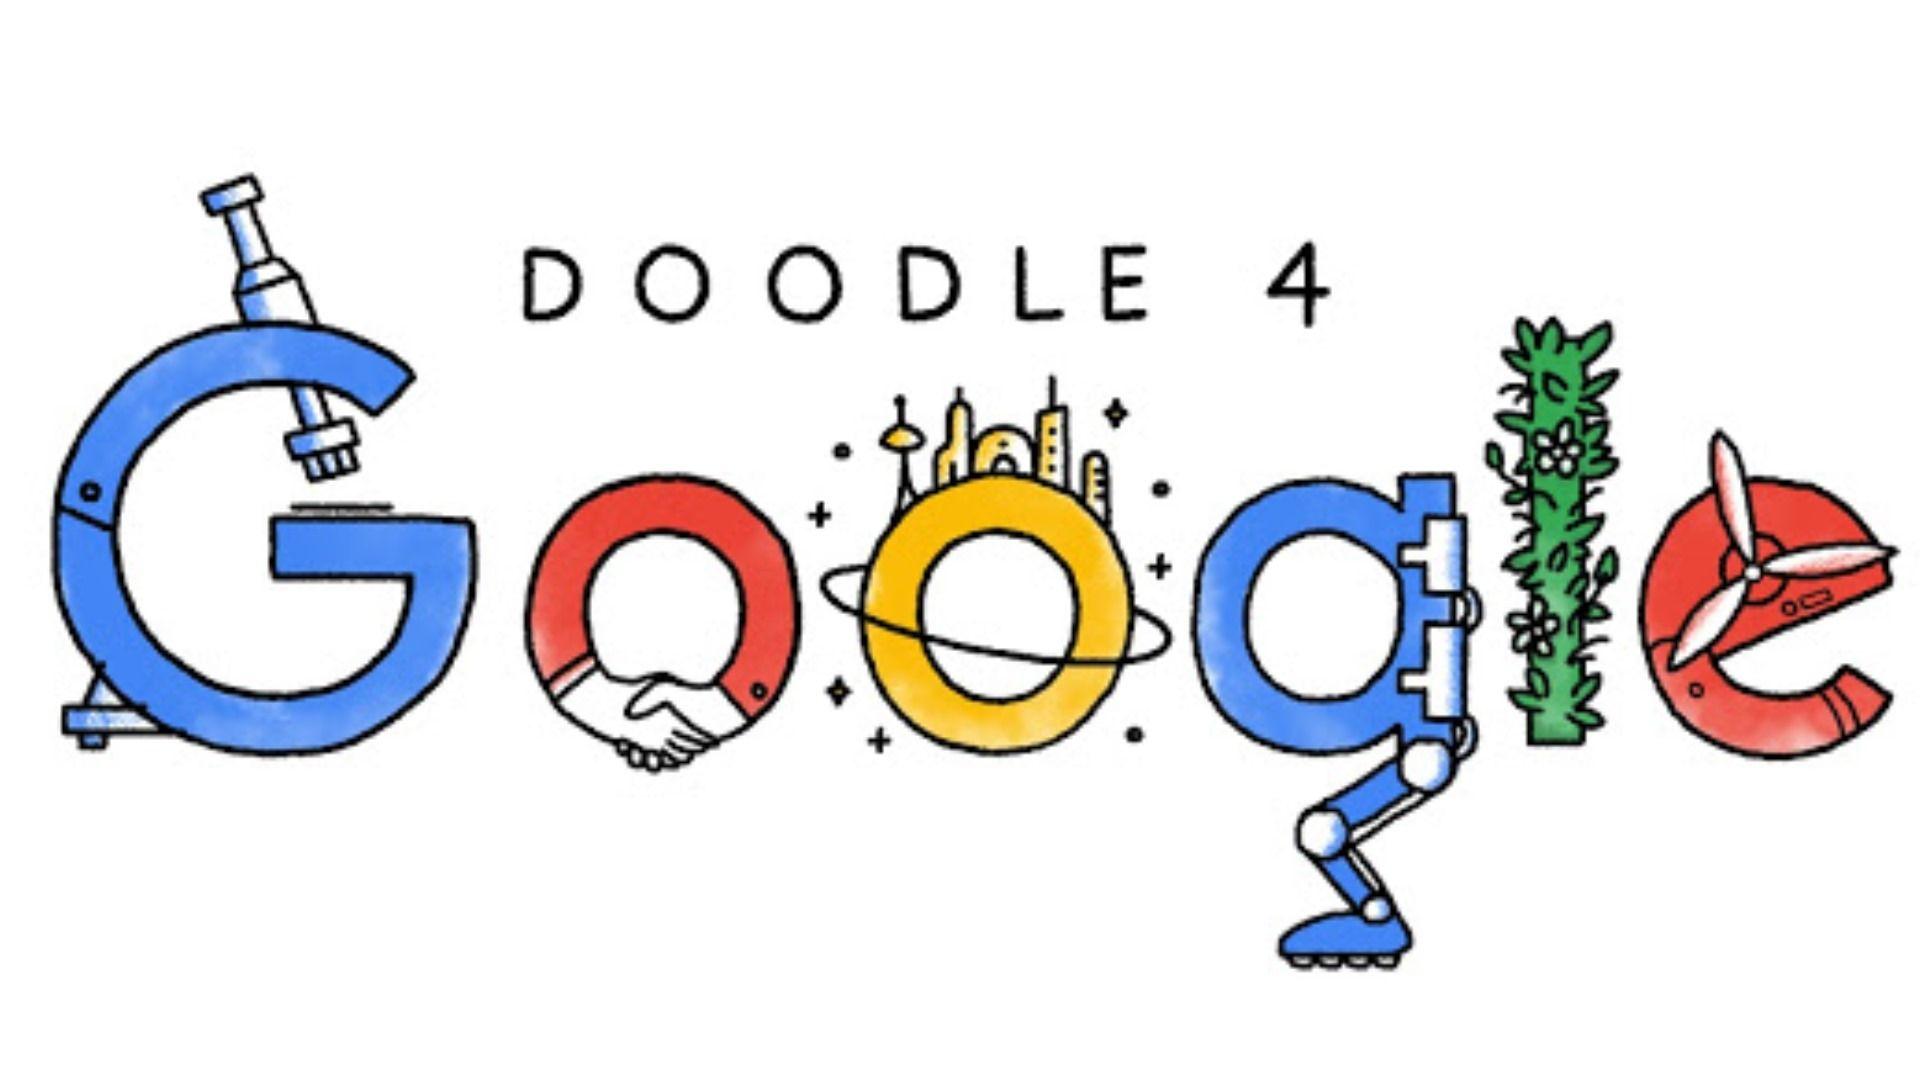 Google Doodle Logo - Why Google Doodles are so important? - Floret Media | BlogFloret ...